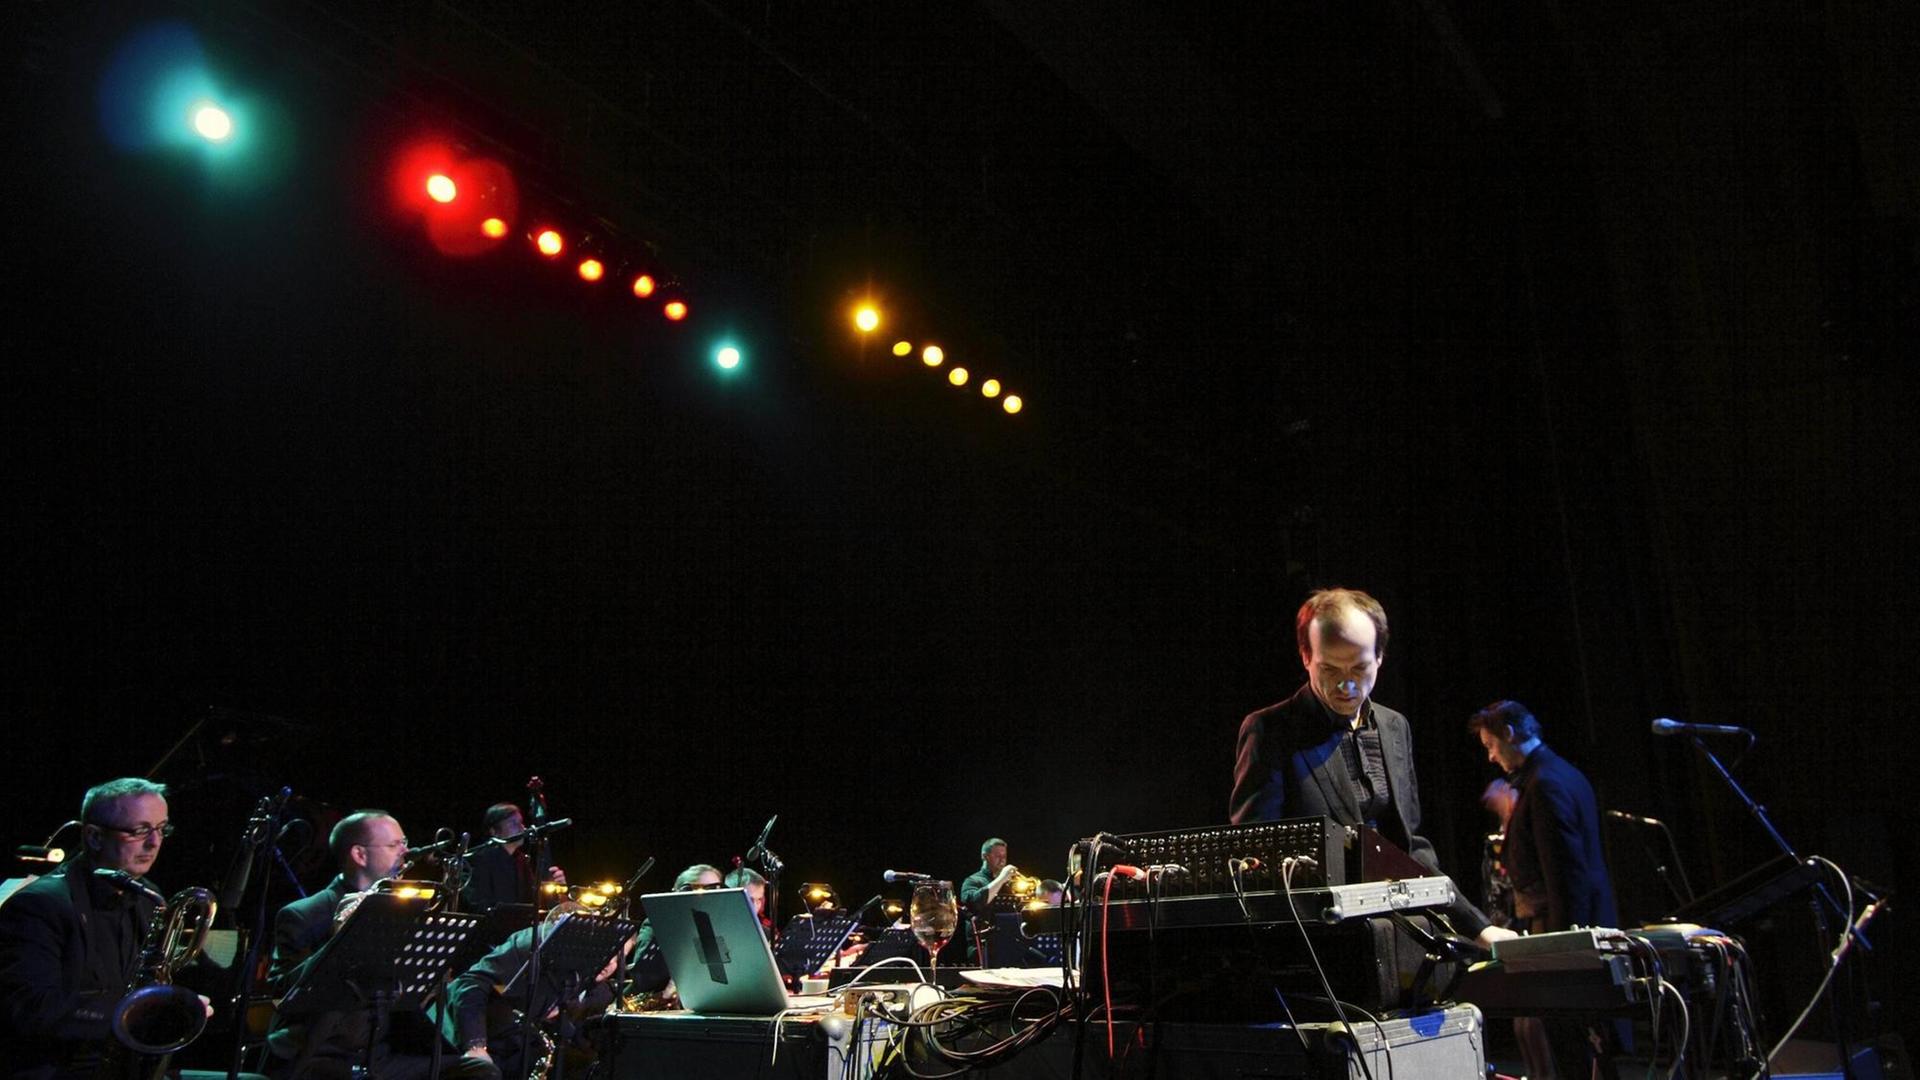 Der Musiker Matthew Herbert steht bei einem Konzert seiner Bigband während eines Konzertes in Hamburg am Keyboard.